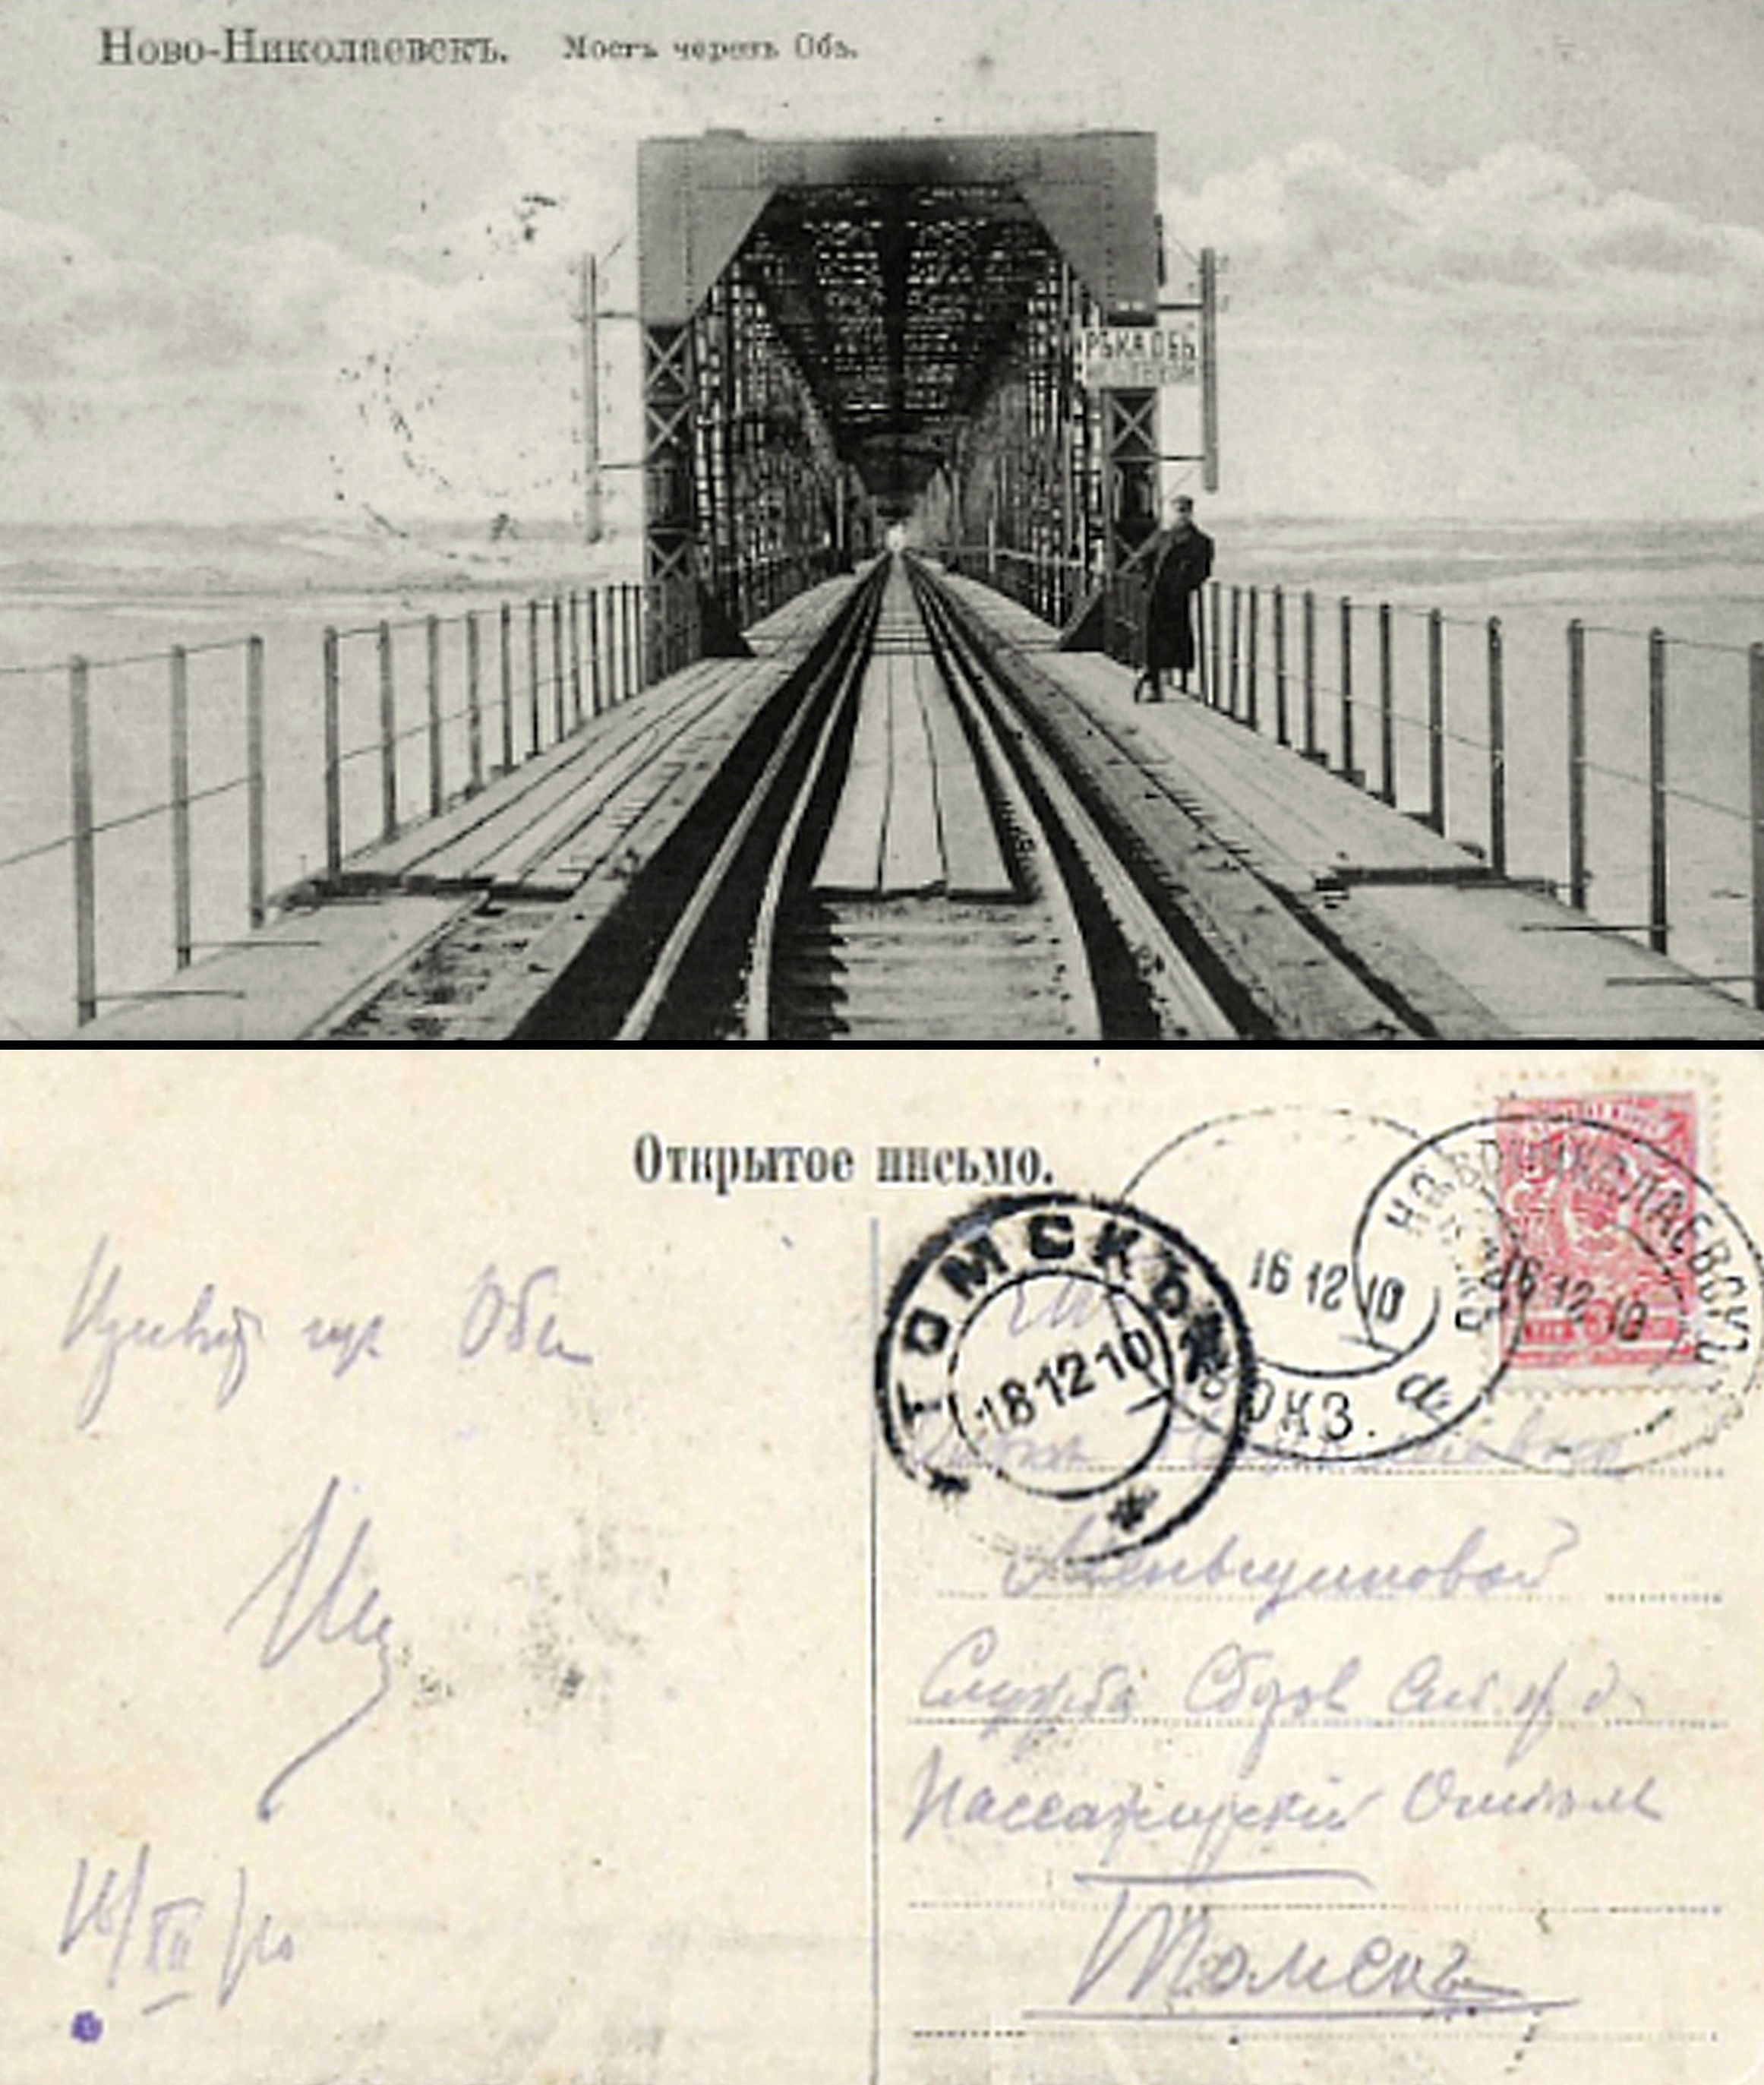 Мост через Обь 16 дек 1910